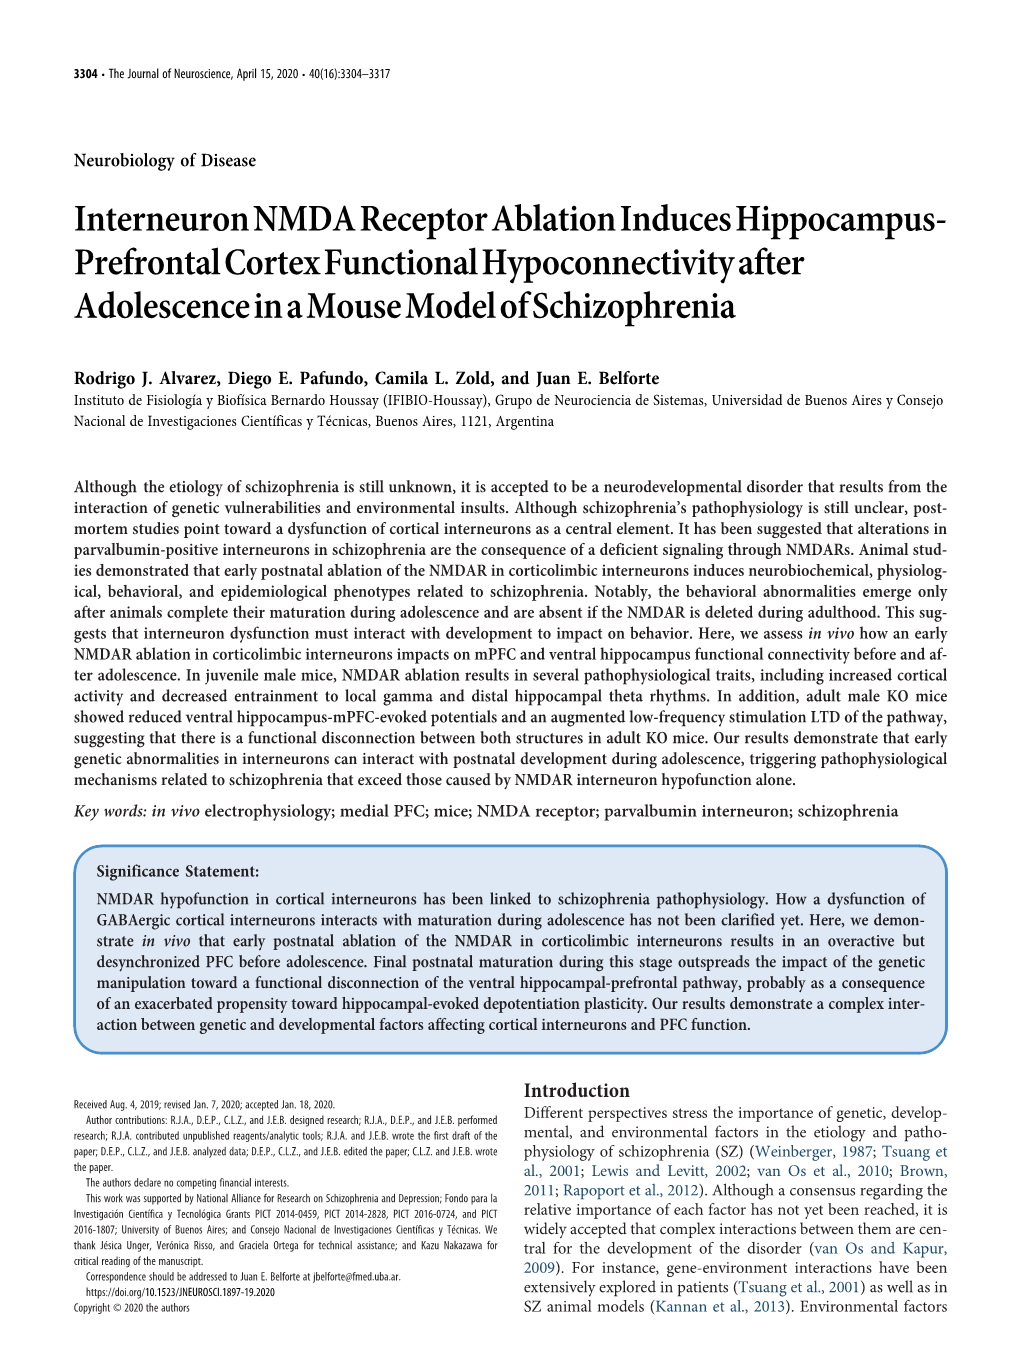 Interneuron NMDA Receptor Ablation Induces Hippocampus-Prefrontal